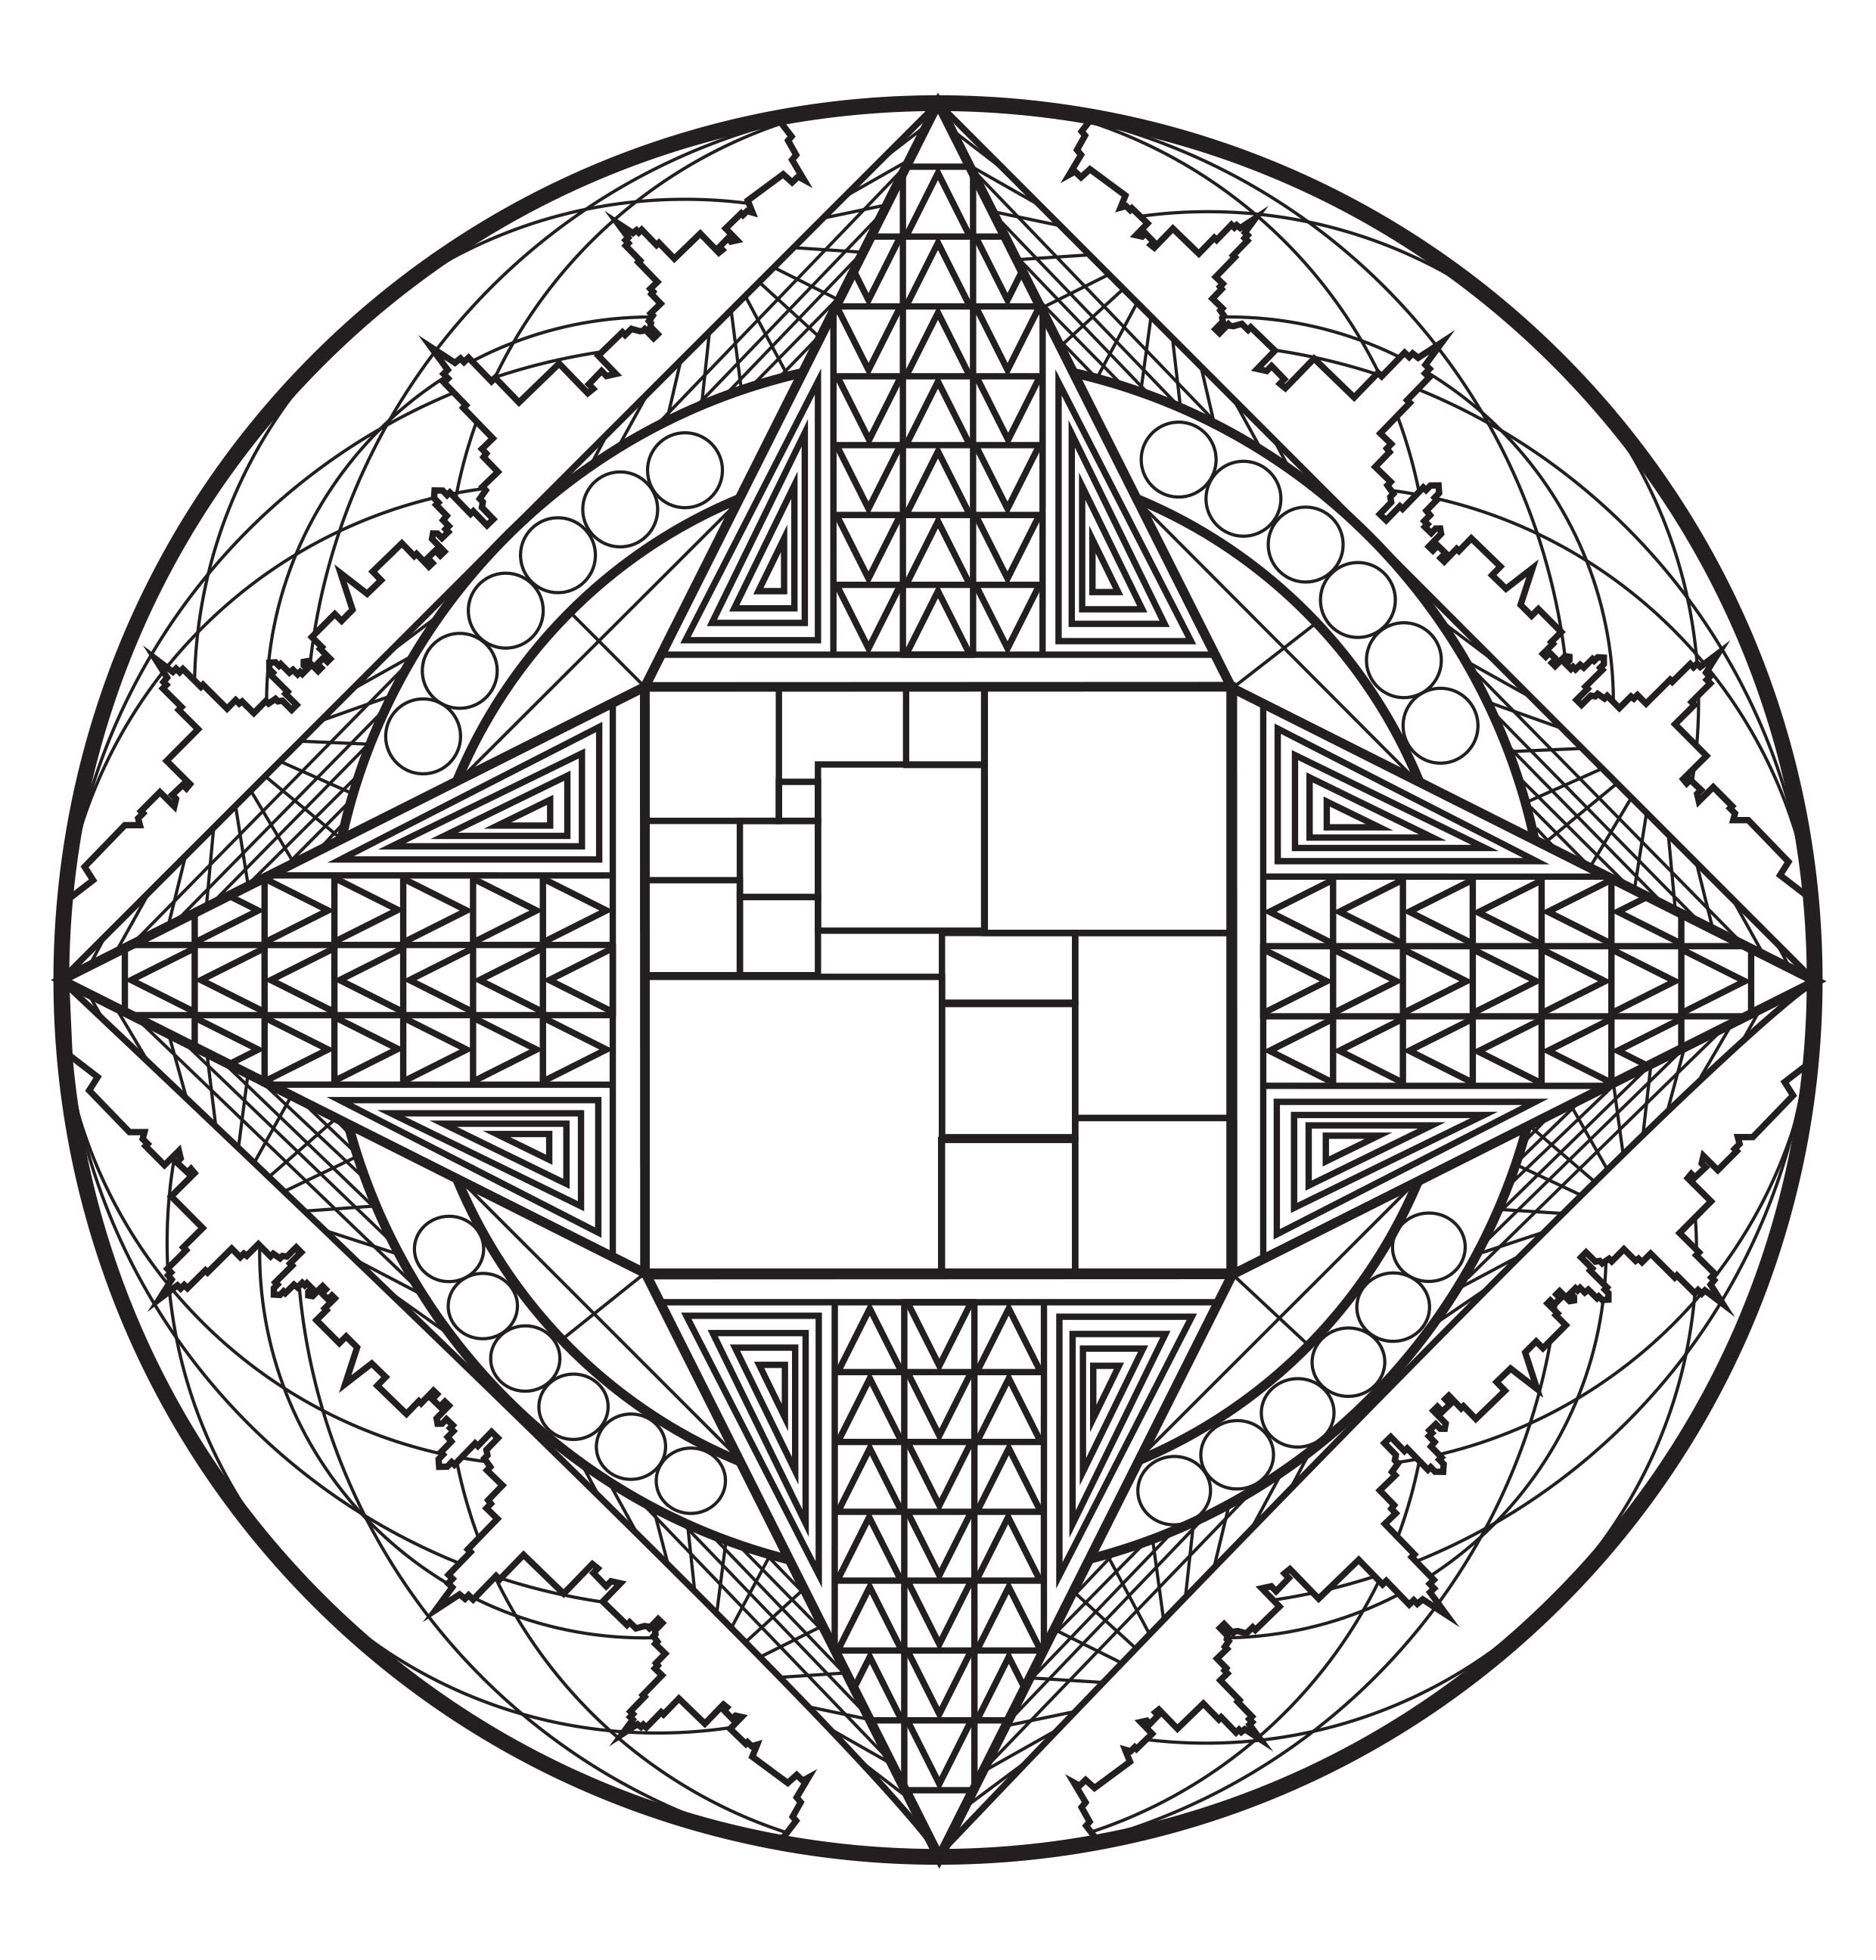 Lasciatevi trasportare da questo superbo Mandala dalle forme eleganti e armoniose. Utilizzate le tecniche che conoscete meglio per valorizzarlo.